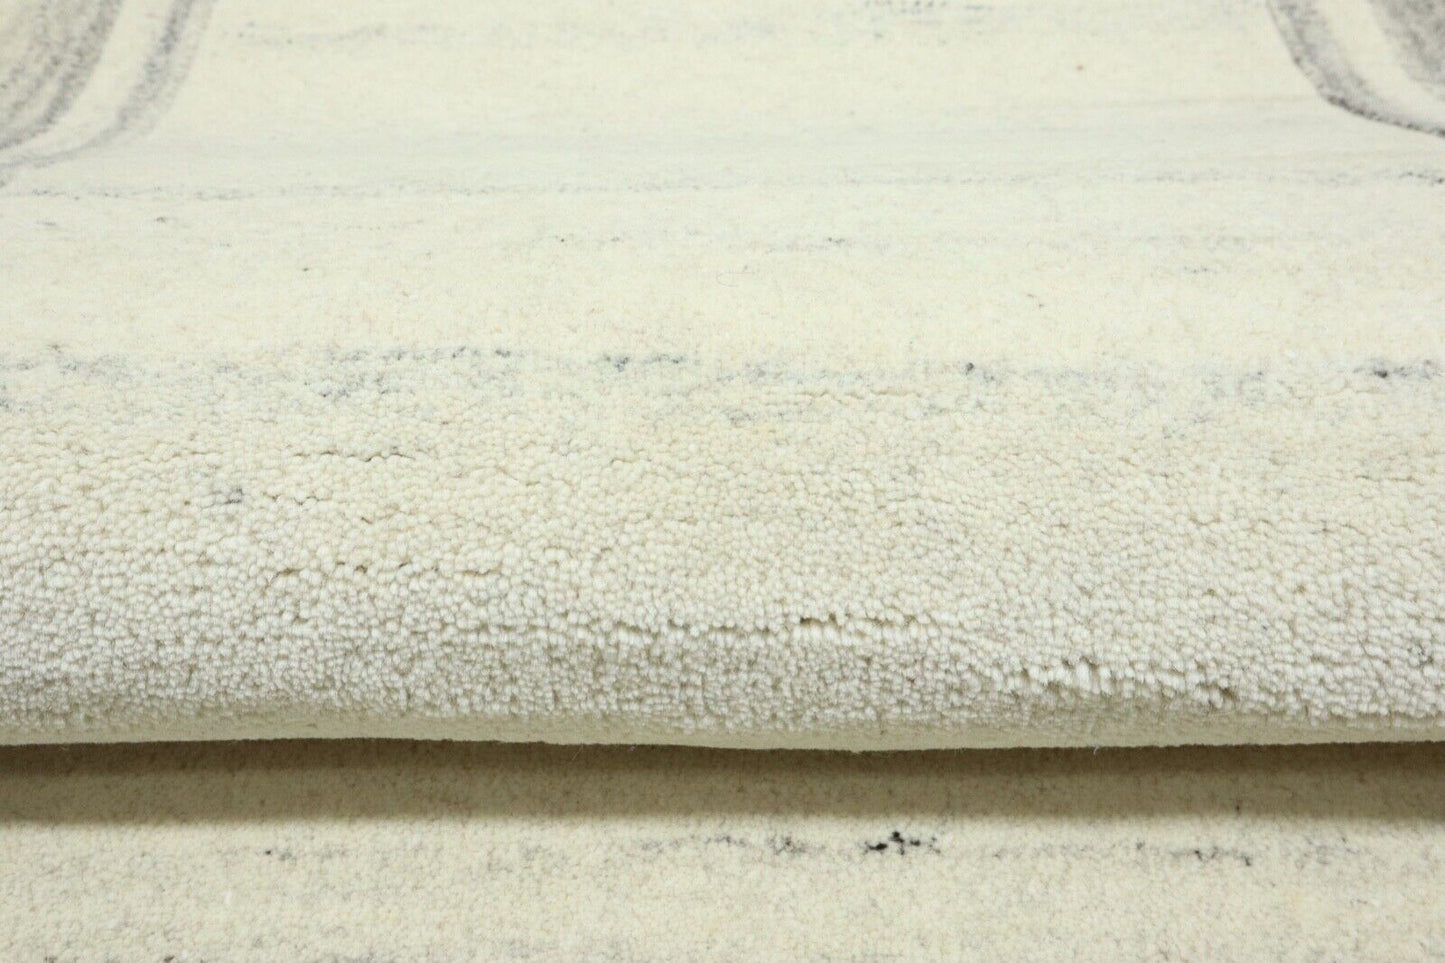 Gabbeh Teppich 100% Wolle 70X140 cm Handarbeit Grau Beige Handgetuftet T1035